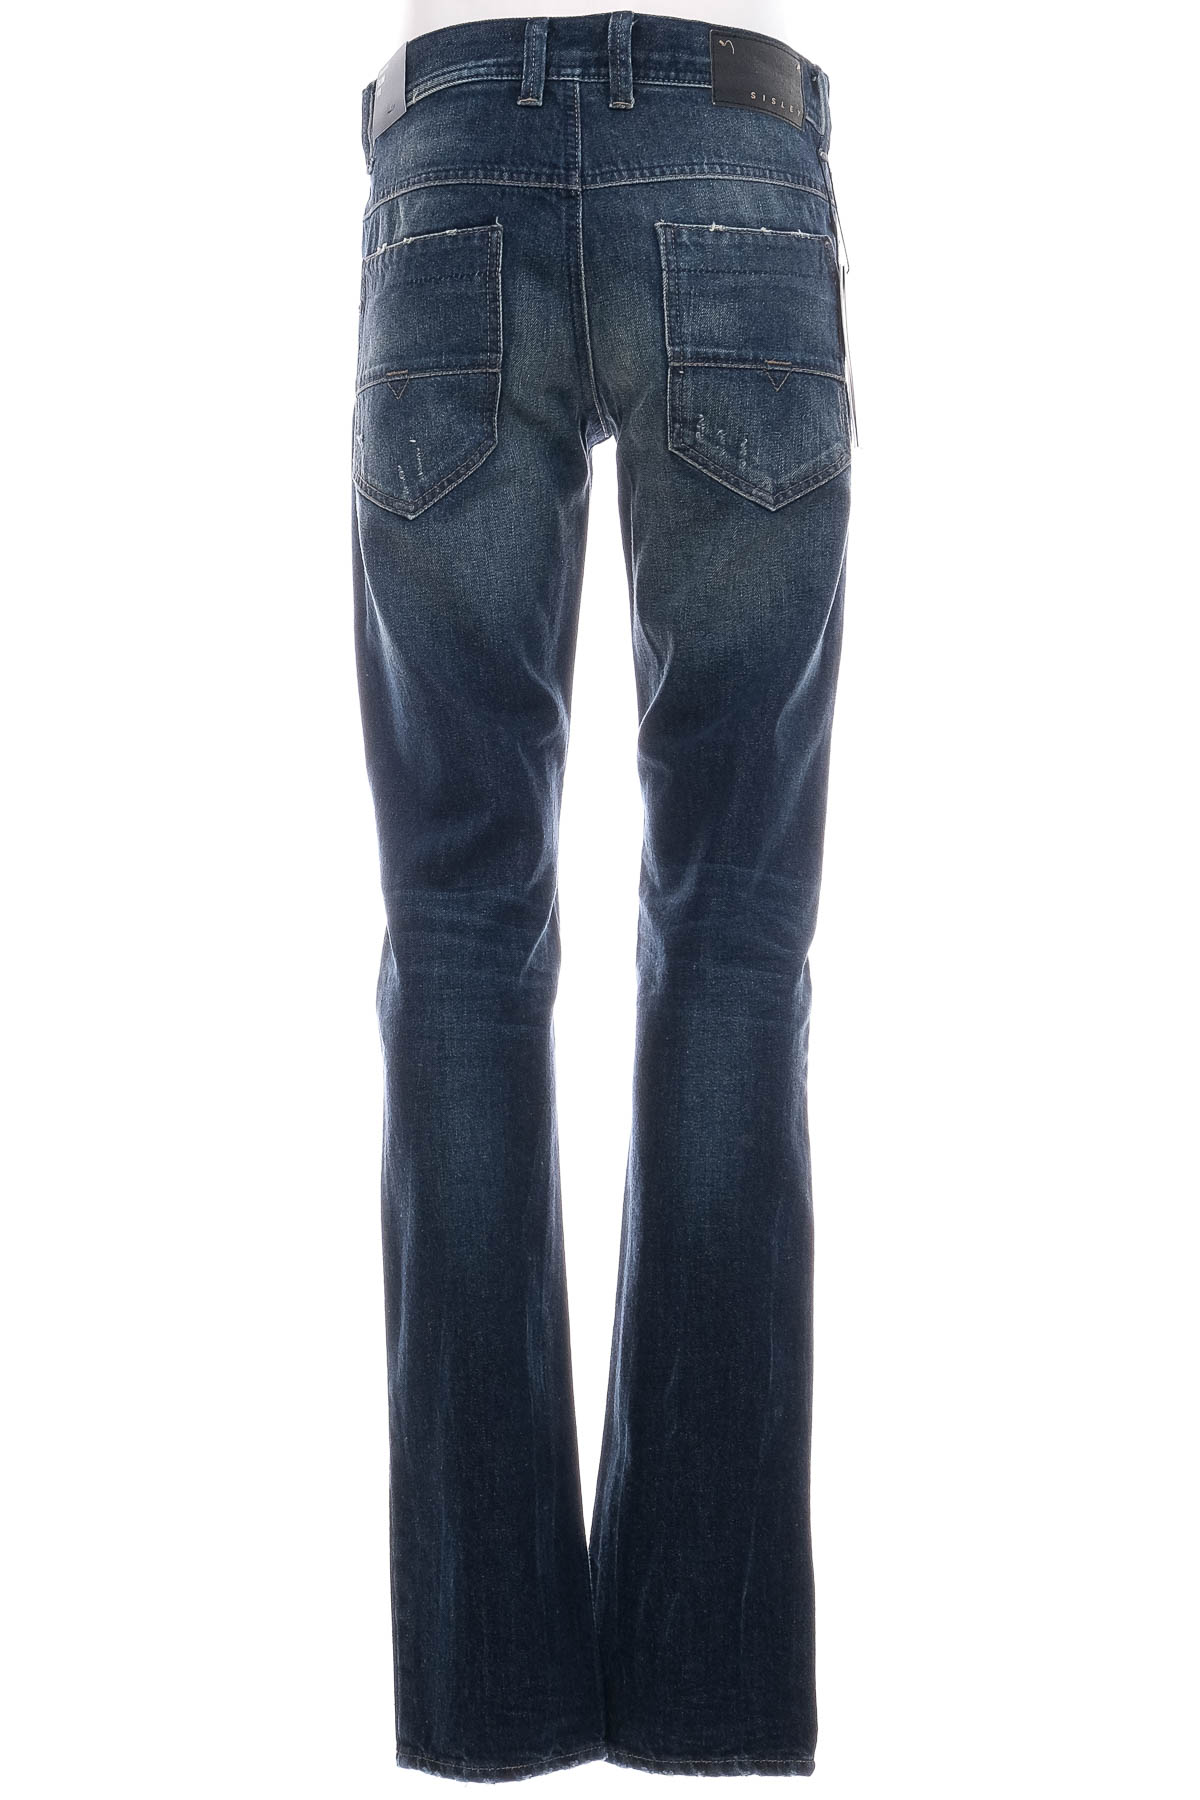 Jeans pentru bărbăți - Sisley - 1